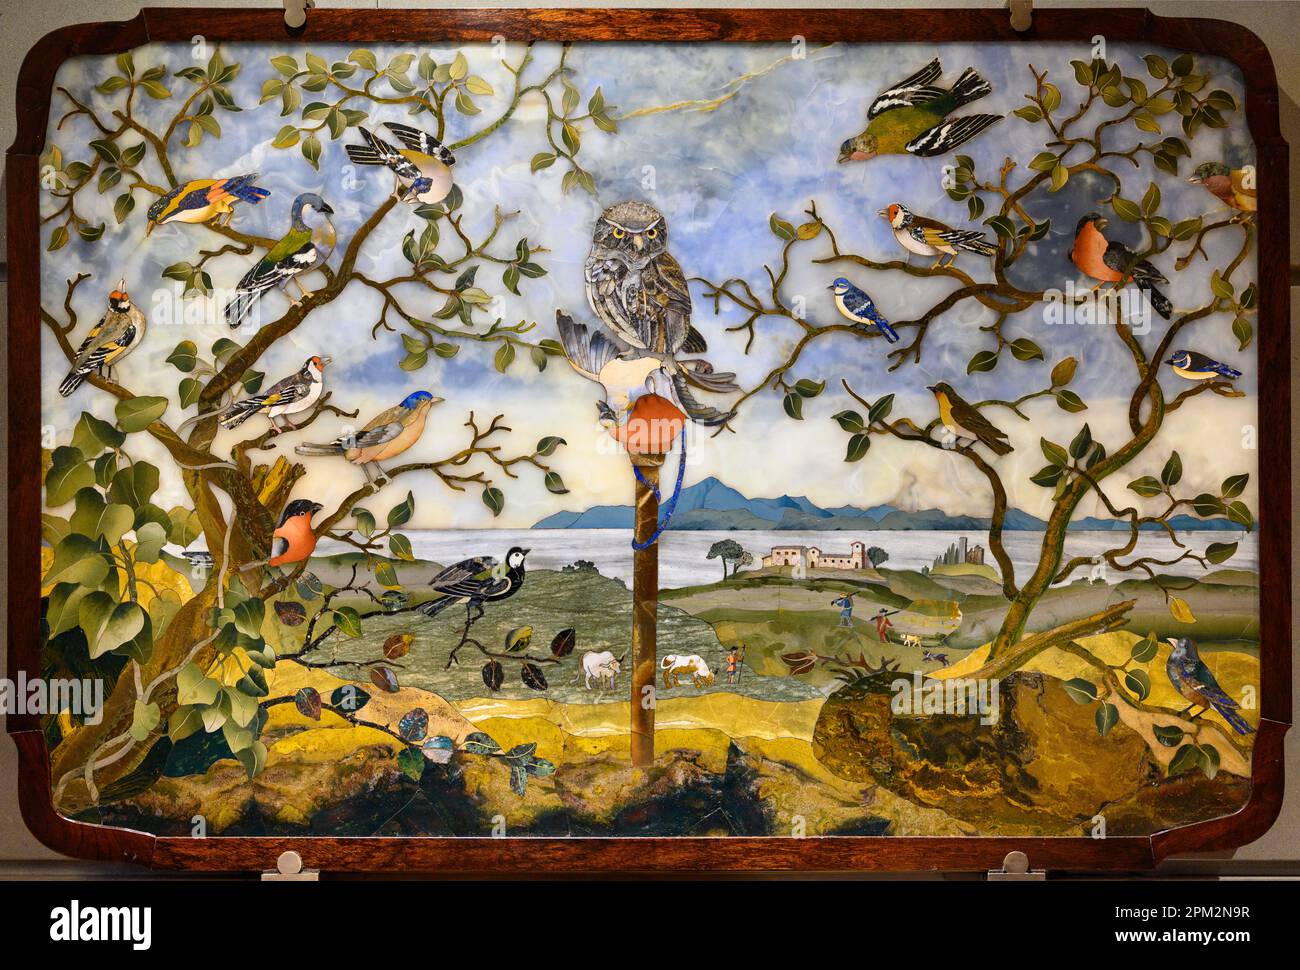 Firenze. Italia. Museo dell'Opificio delle pietre dure. Piano tavolo con gufo e uccelli in un paesaggio, 17th centur Foto Stock